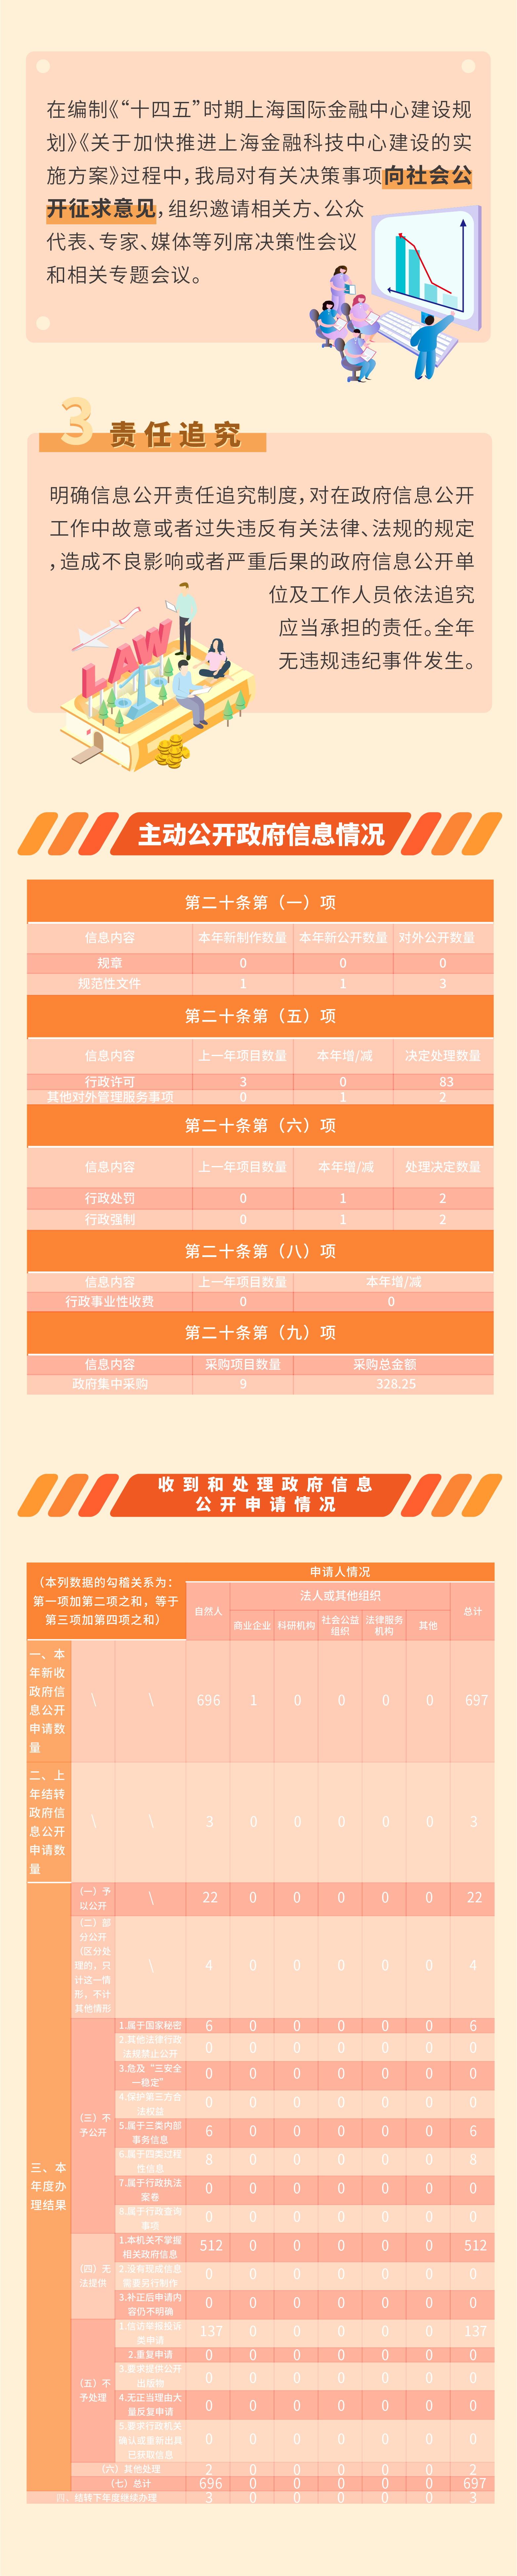 2020上海市地方金融监督管理局政府信息公开年度报告图文解读-3.png